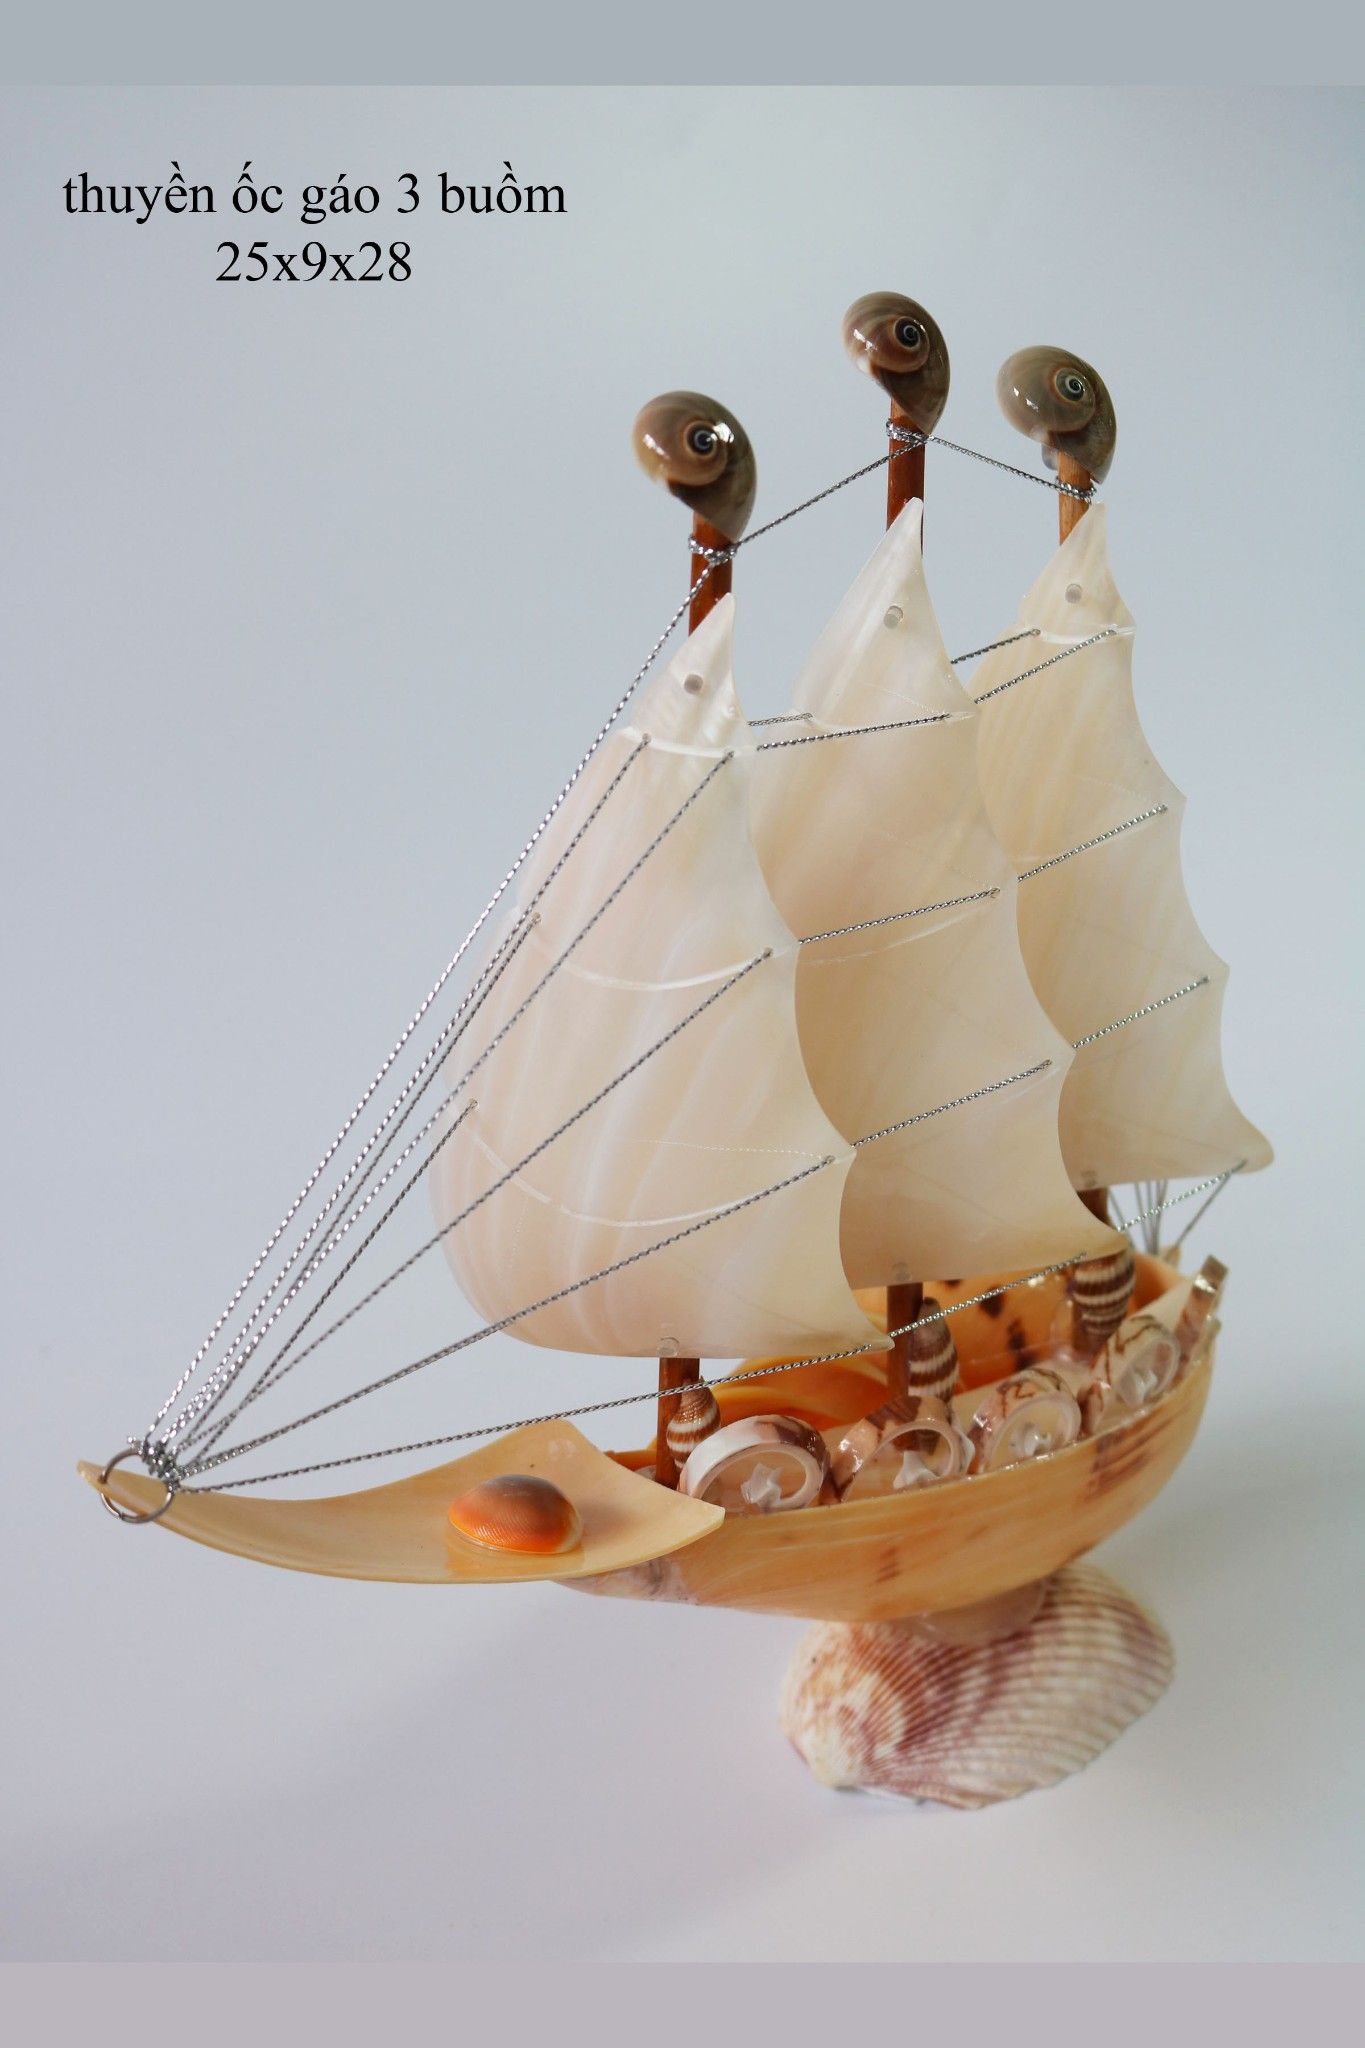  Thuyền buồm ra khơi (thuyền vỏ ốc giác 3 buồm) 